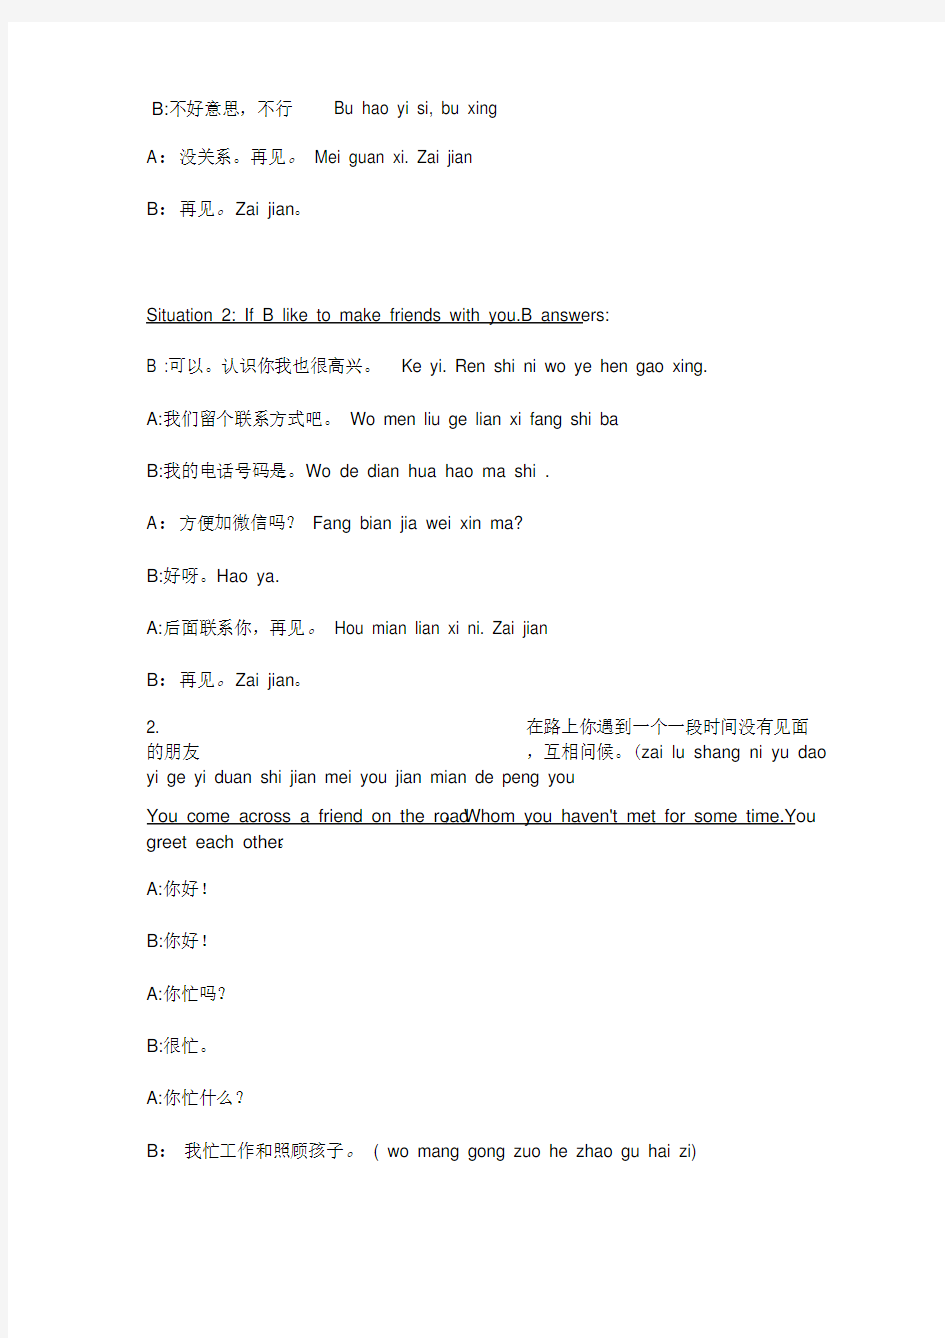 汉语口语情景对话案例1-6课